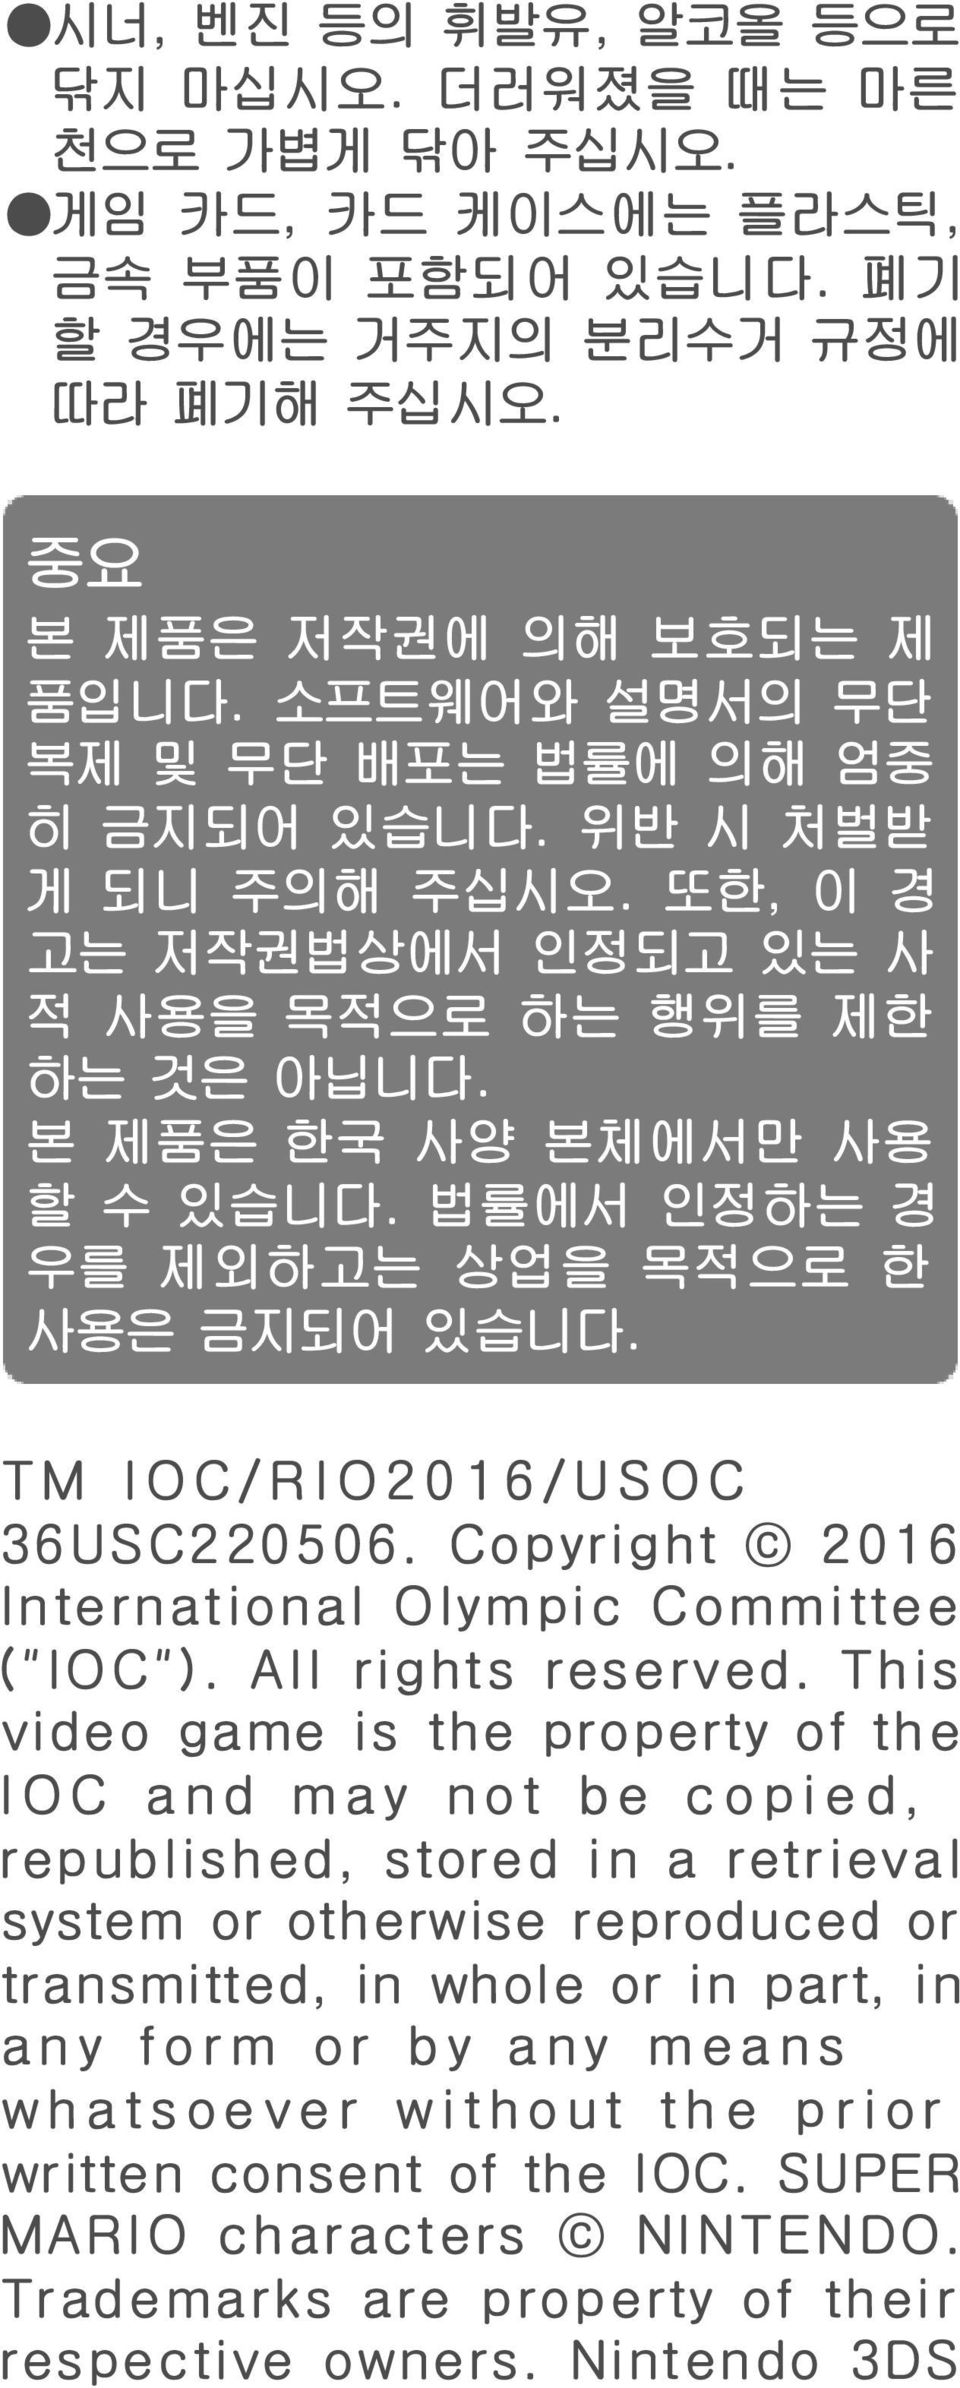 법률에서 인정하는 경 우를 제외하고는 상업을 목적으로 한 사용은 금지되어 있습니다. TM IOC/RIO2016/USOC 36USC220506. Copyright 2016 International Olympic Committee ("IOC"). All rights reserved.